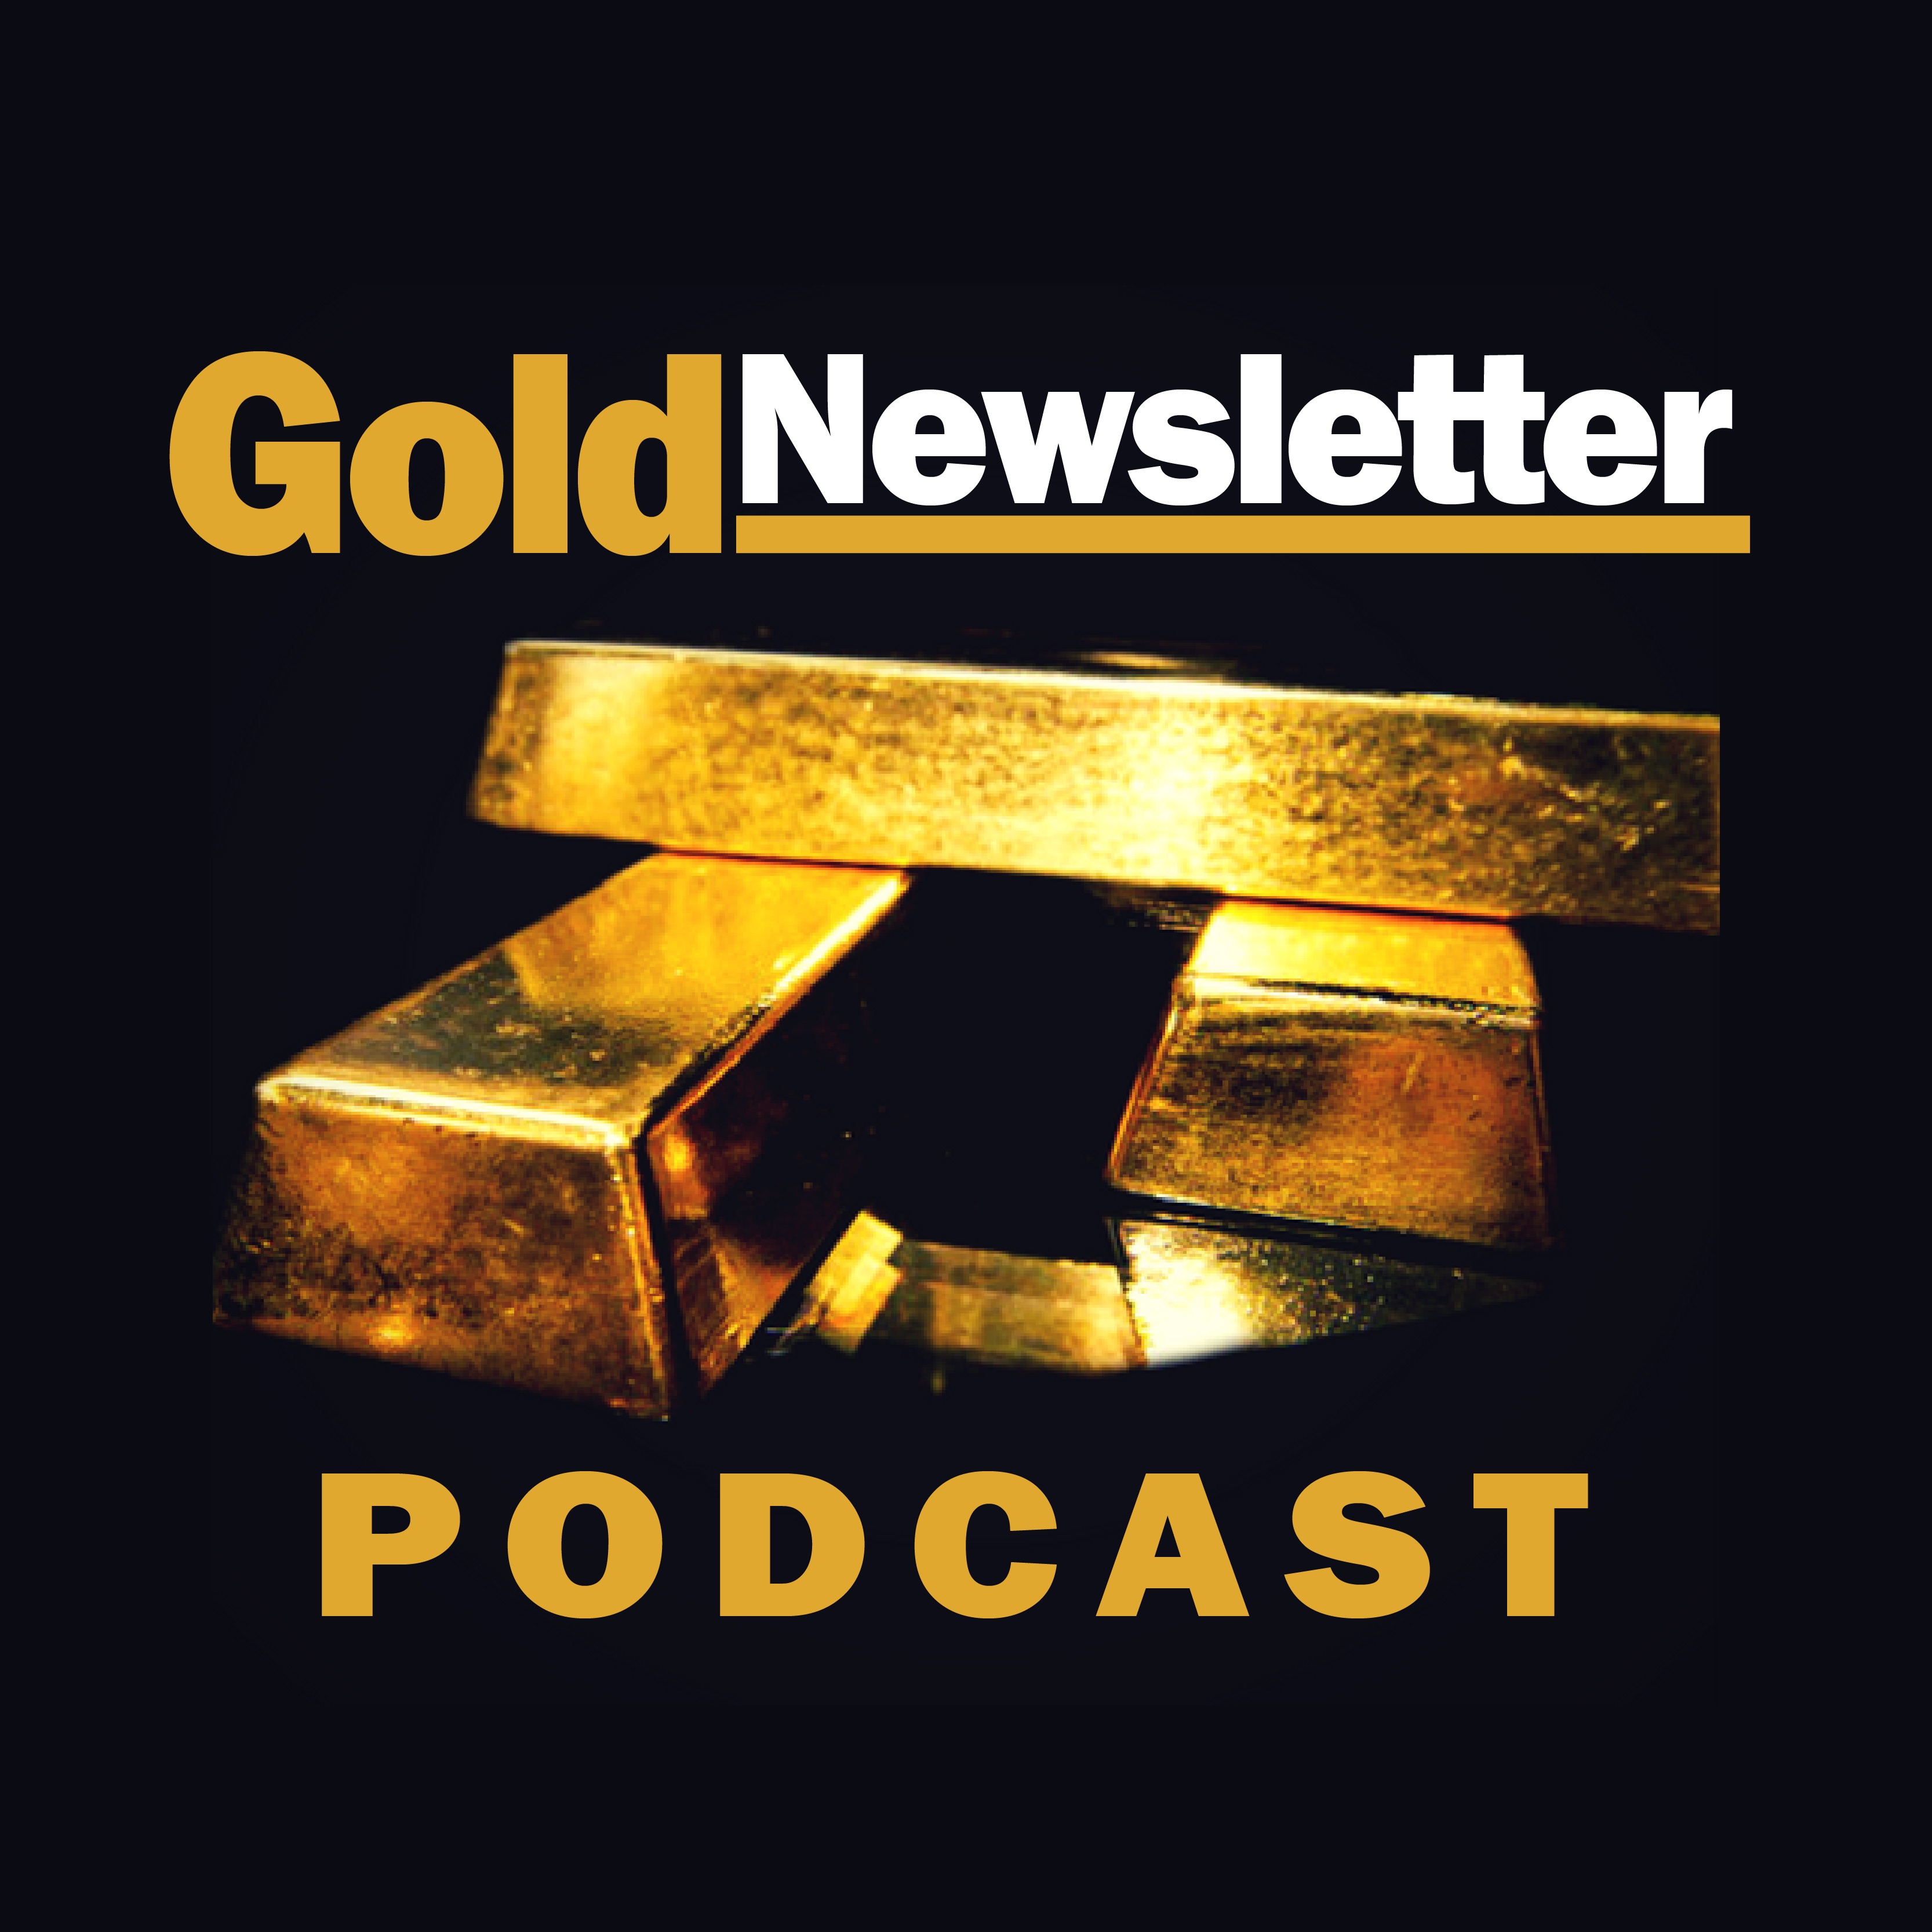 Gold Newsletter Podcast